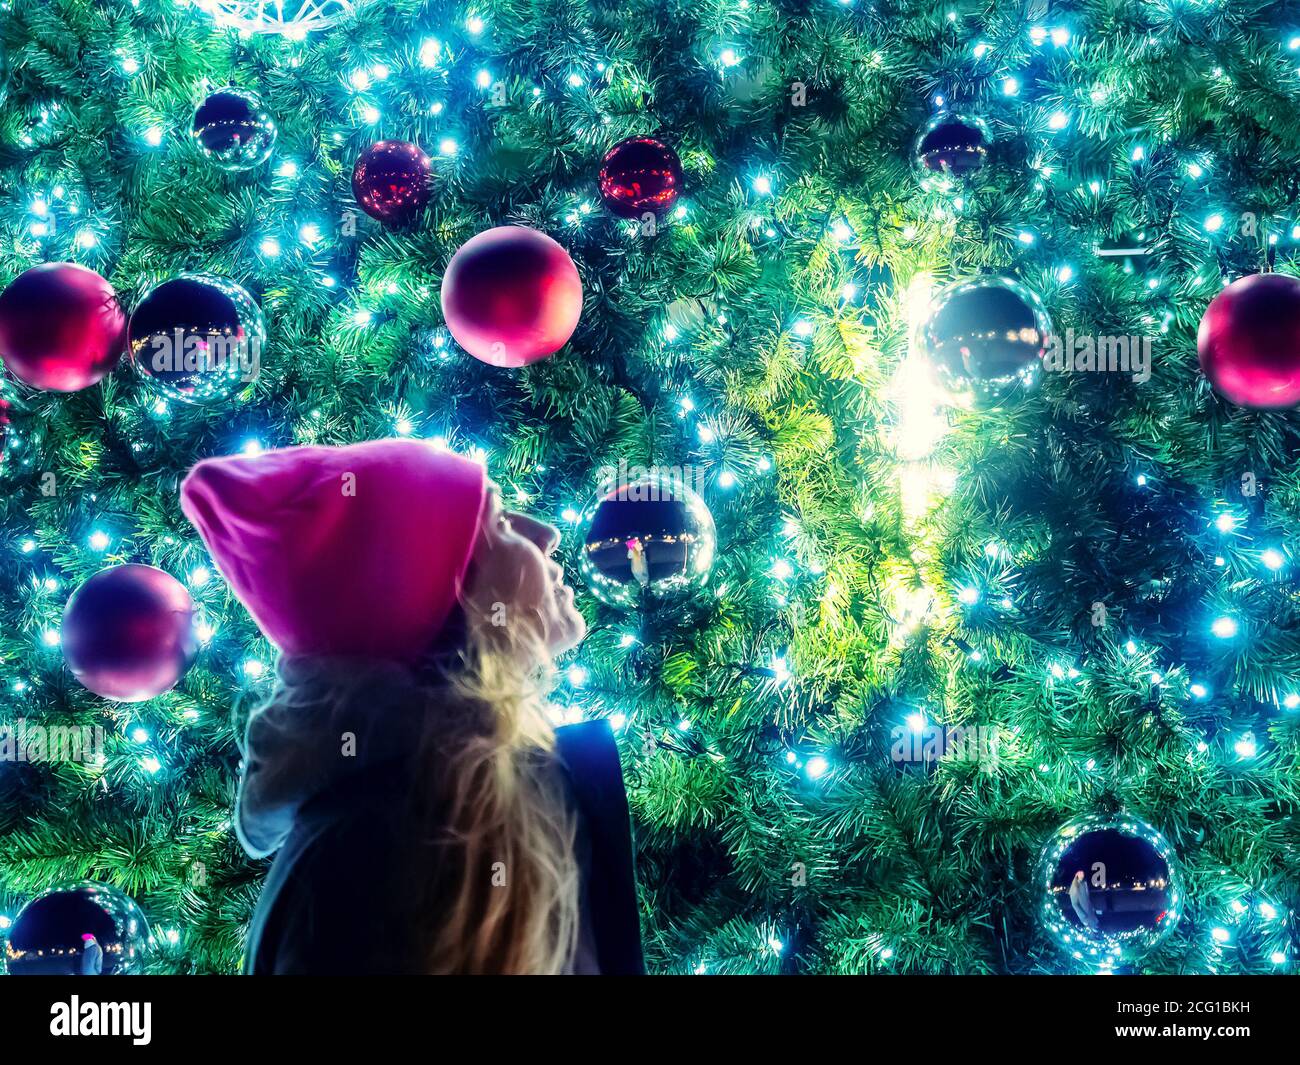 Die Neujahrsbälle auf den Zweigen des Weihnachtsbaums mit einer Girlande und einem Mädchen, das daneben steht, spiegeln sich im Ball wider. Stockfoto